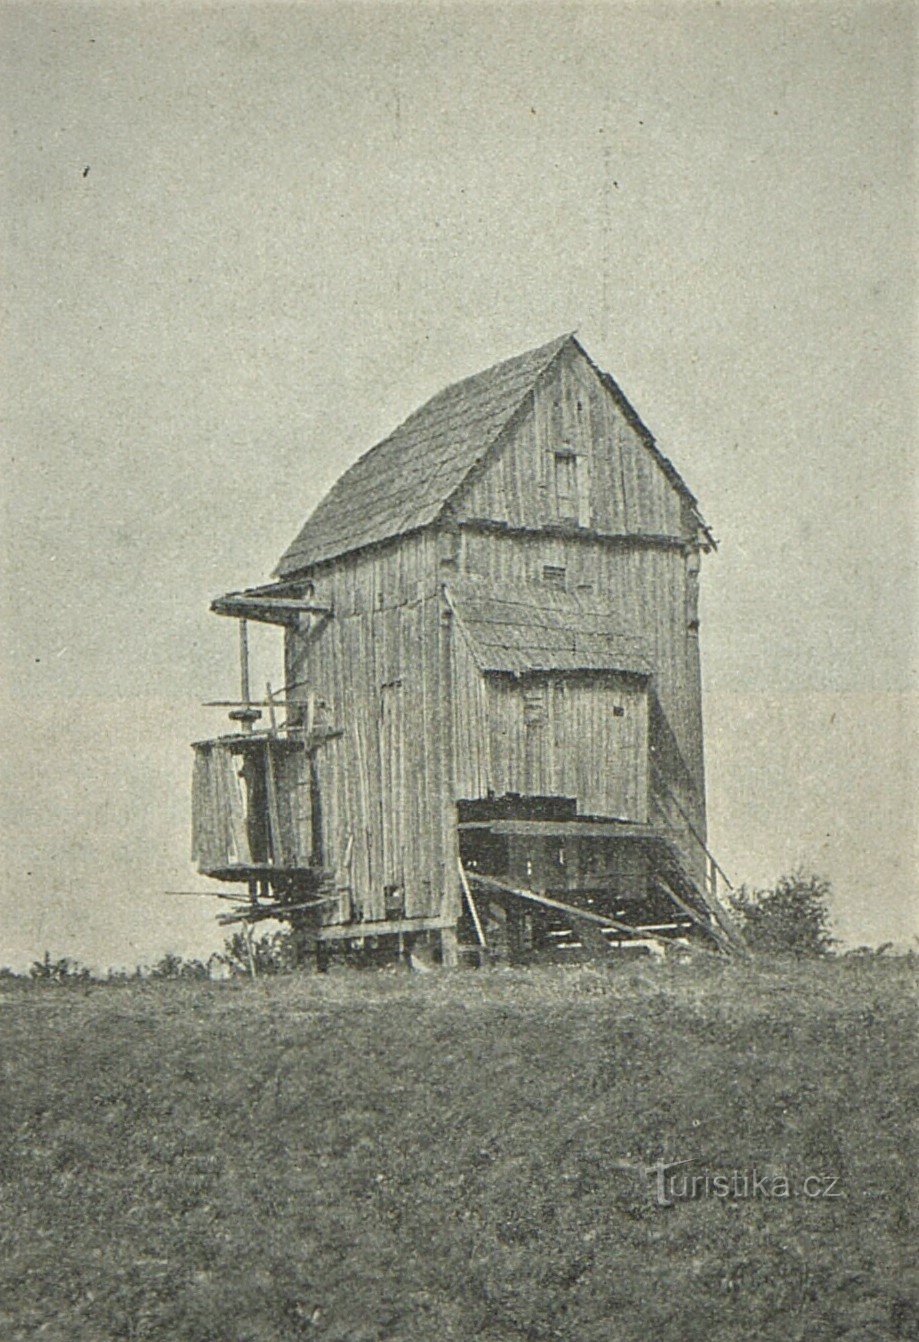 Ảnh cối xay gió Doblnice từ năm 1909